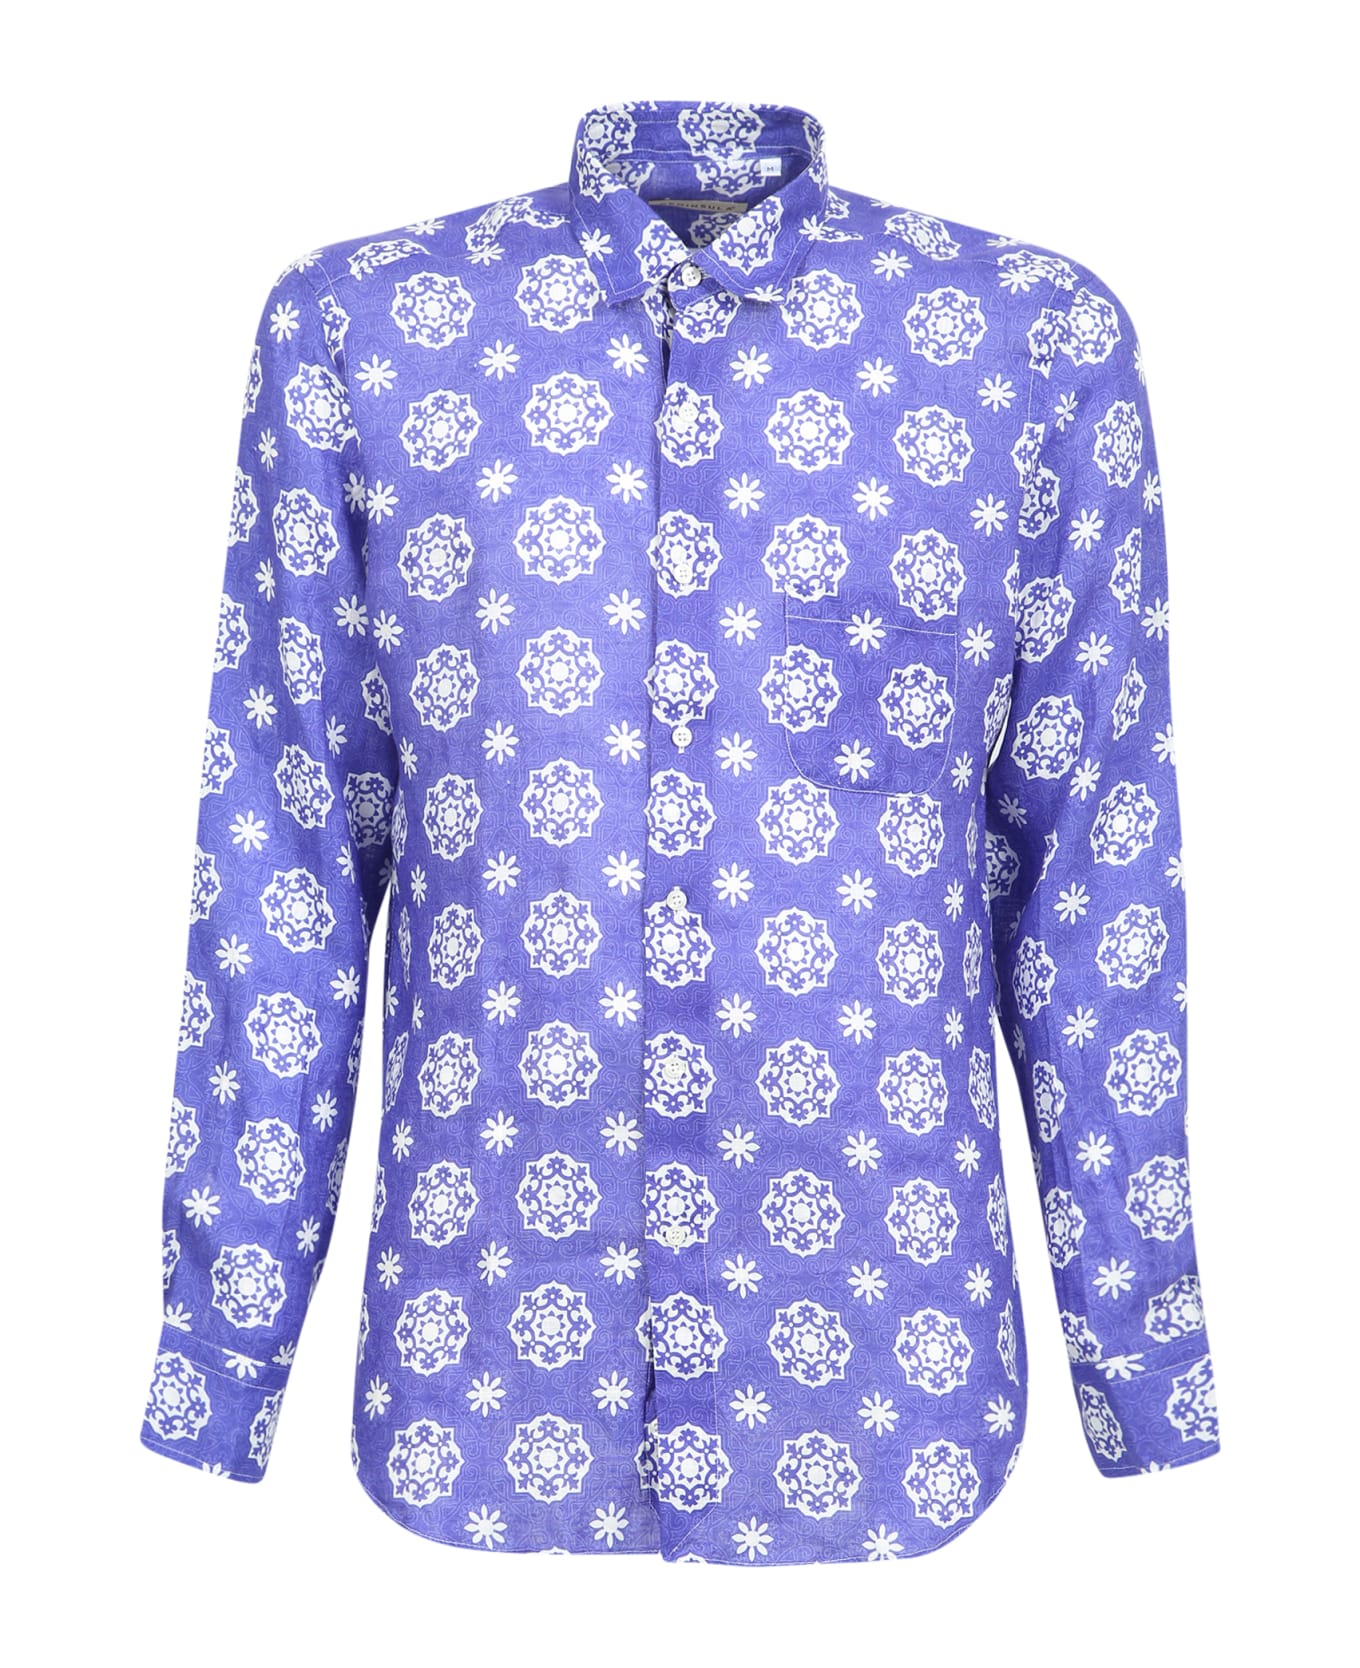 Peninsula Swimwear Filicudi Linen Shirt - Blue